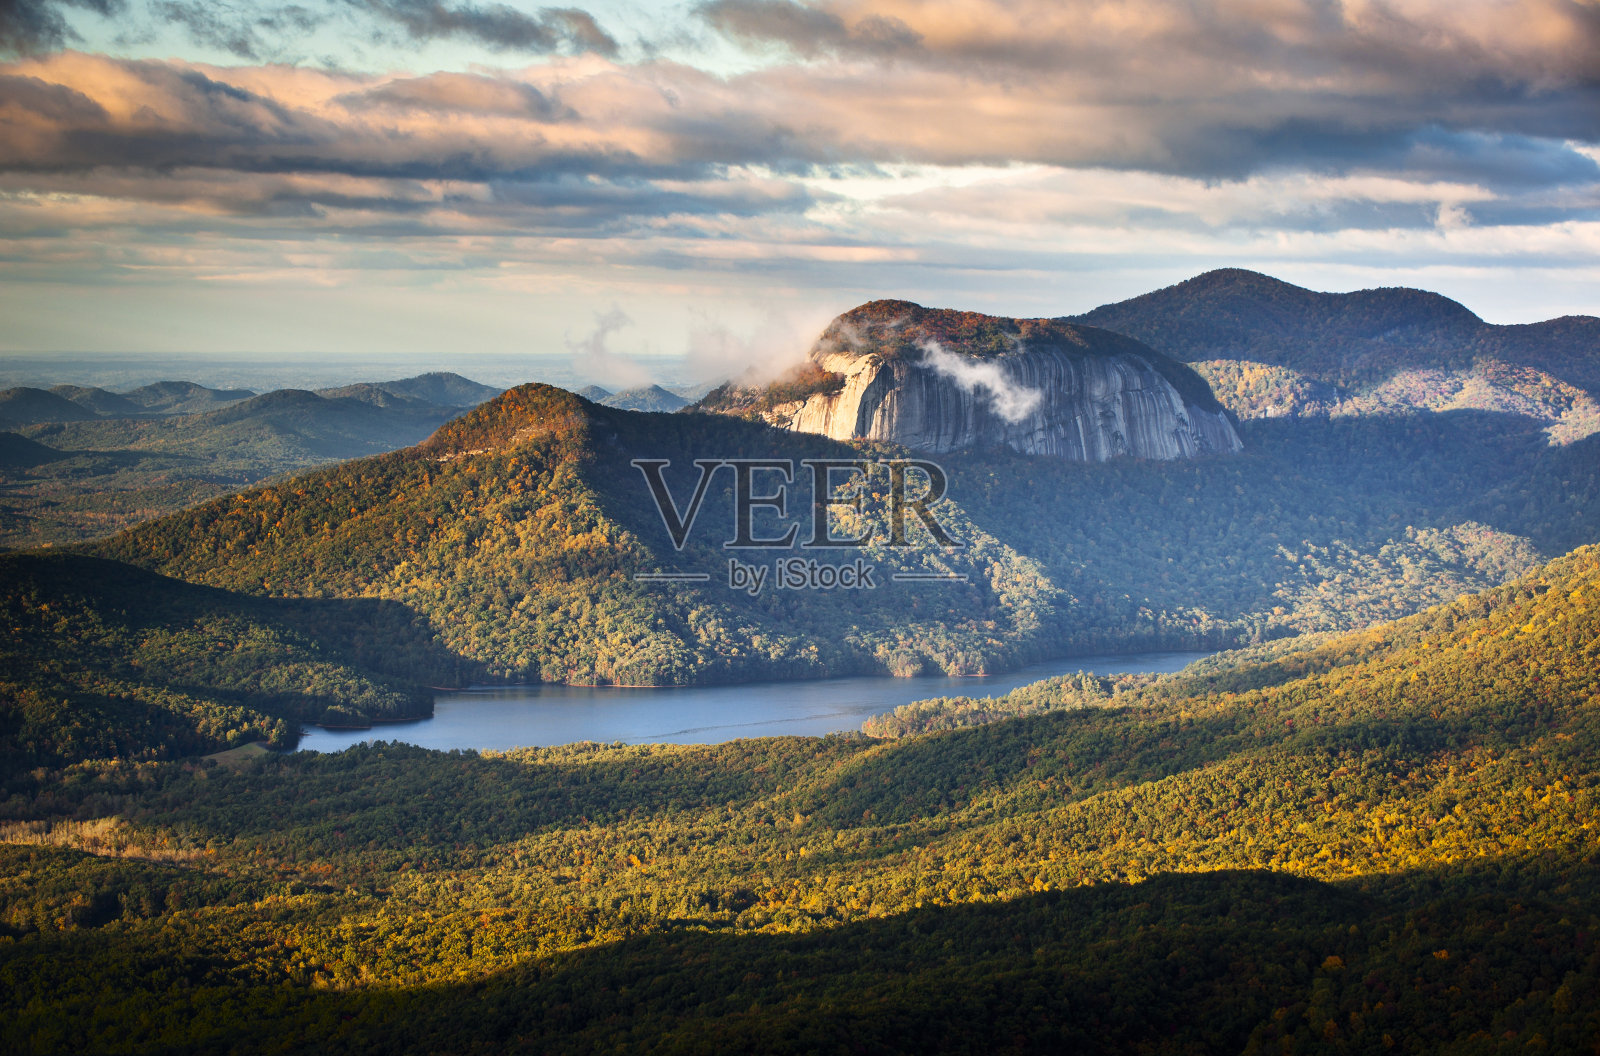 桌岩州立公园南卡罗来纳蓝岭山脉景观照片摄影图片